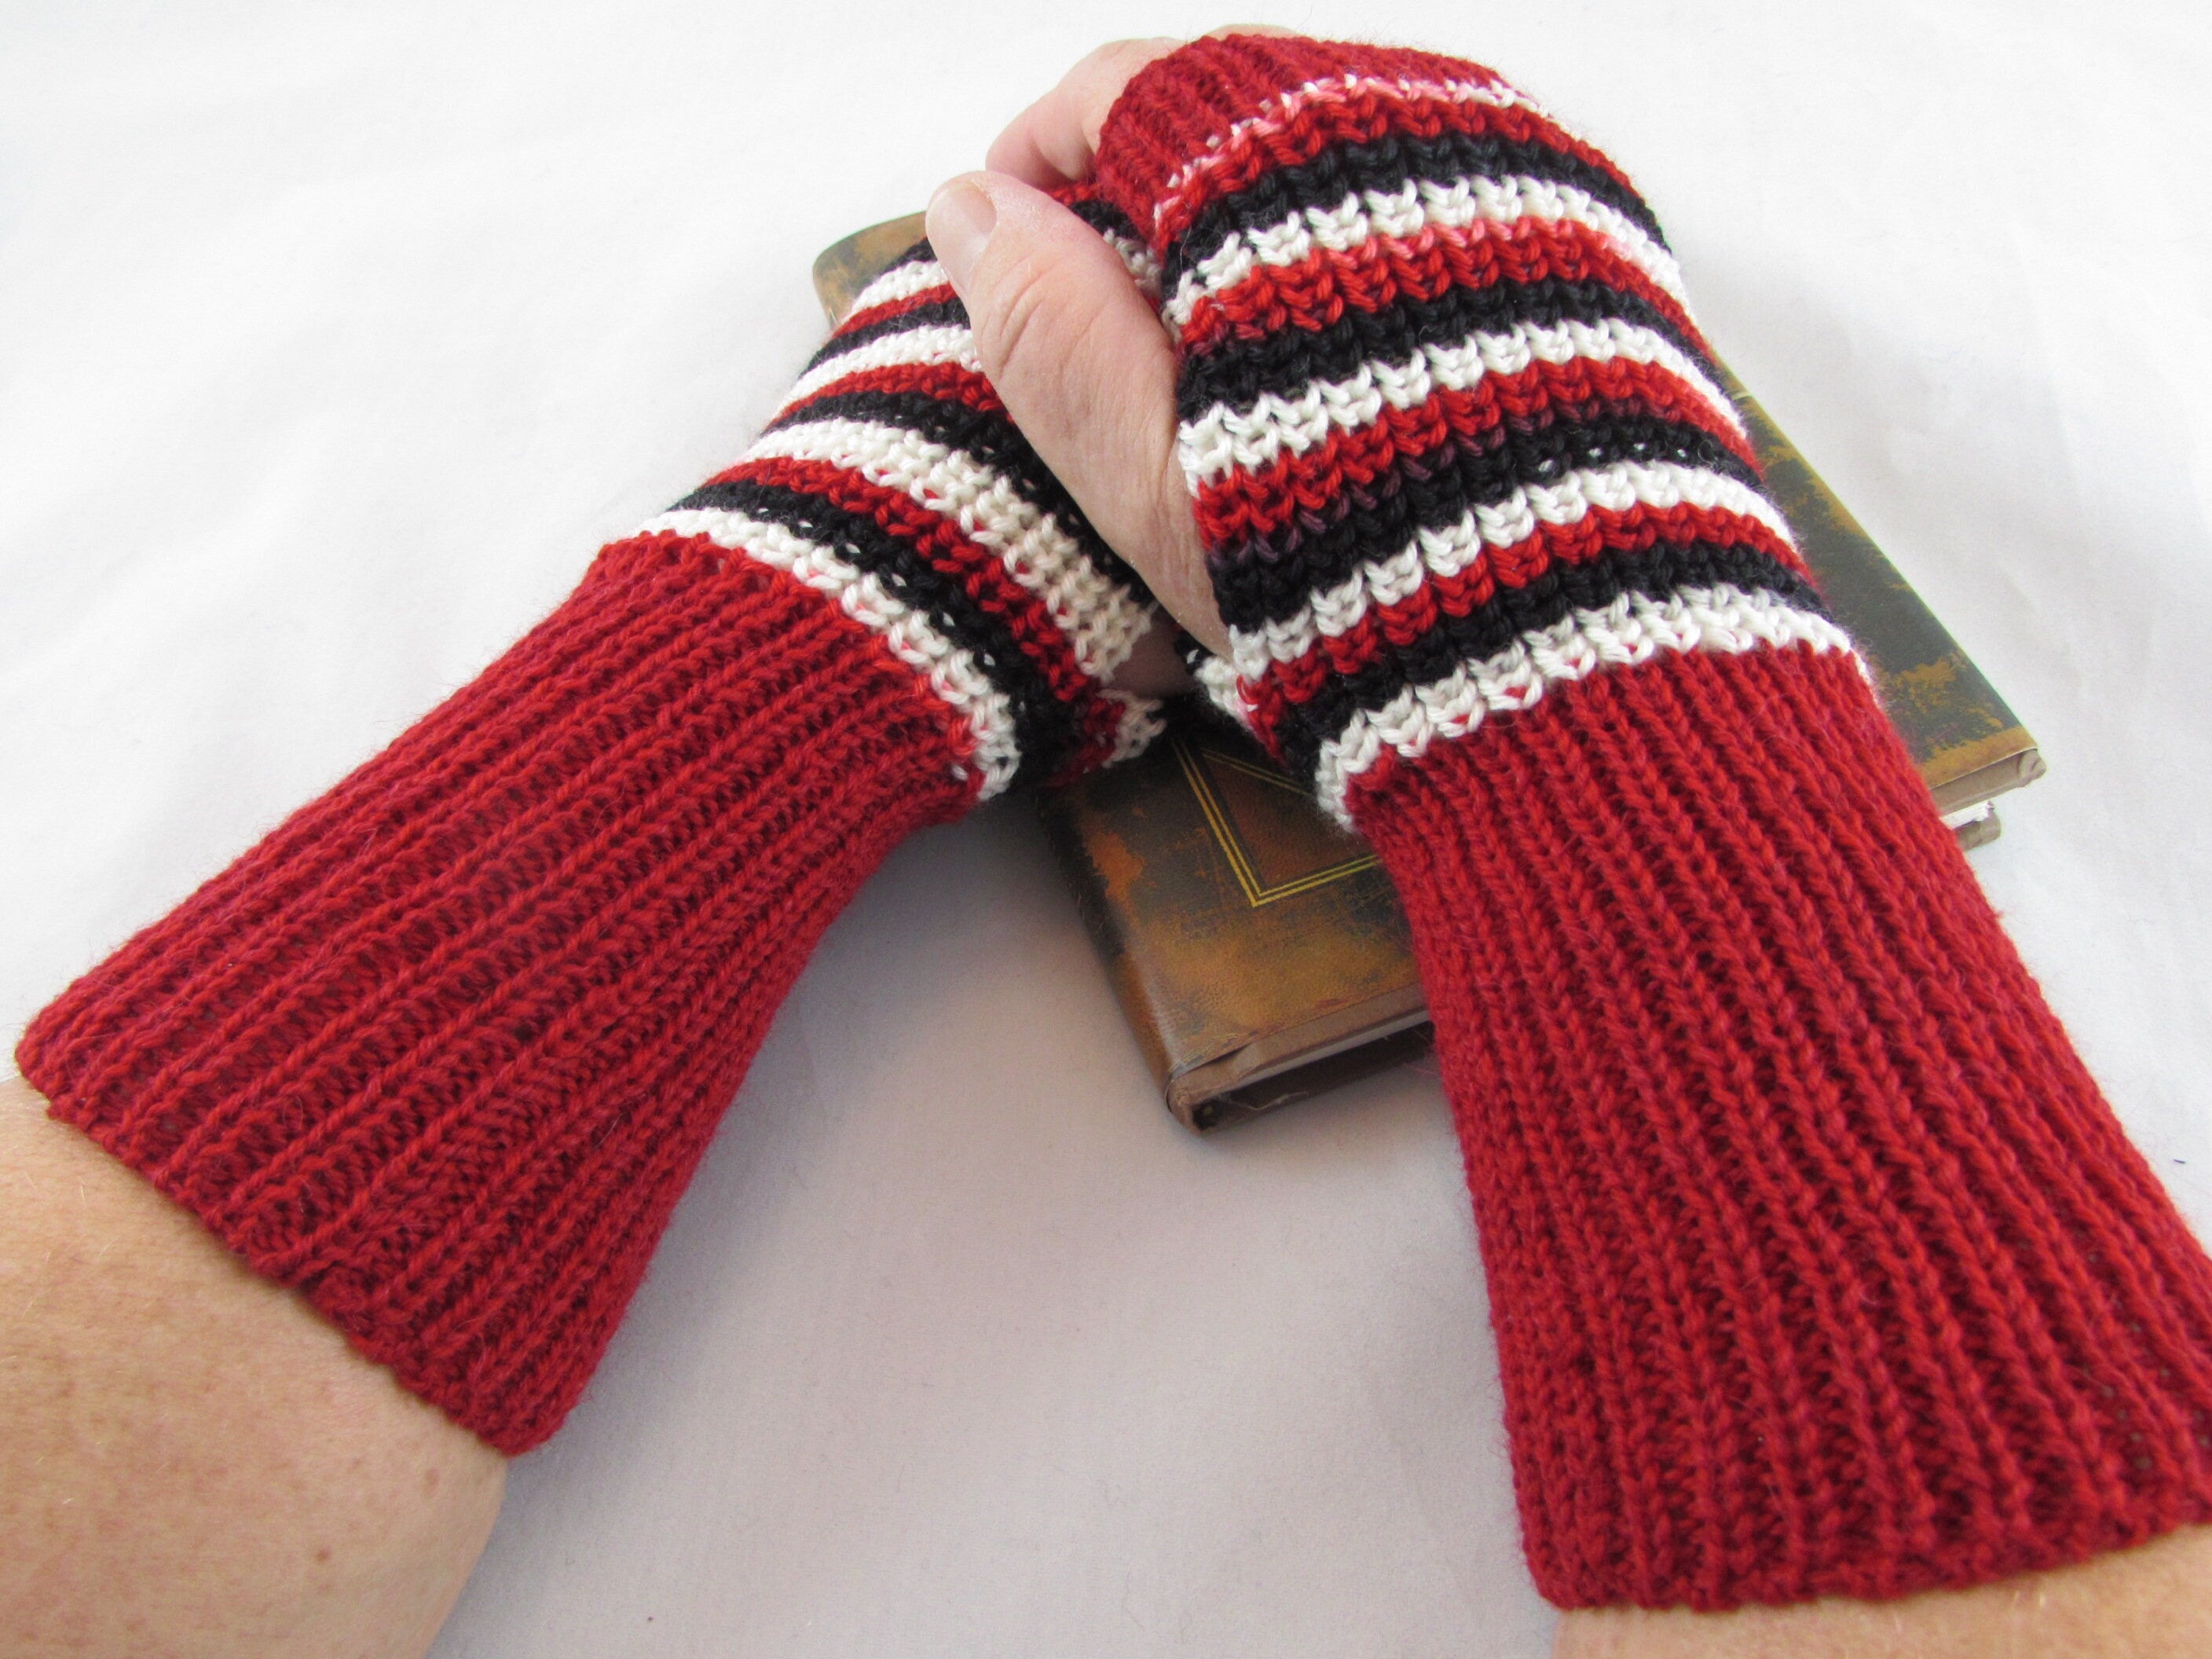 Fingerless Gloves Women-Fingerless Wrister-Arm Warmers-Knit Fingerless Glove-Wrist Warmers